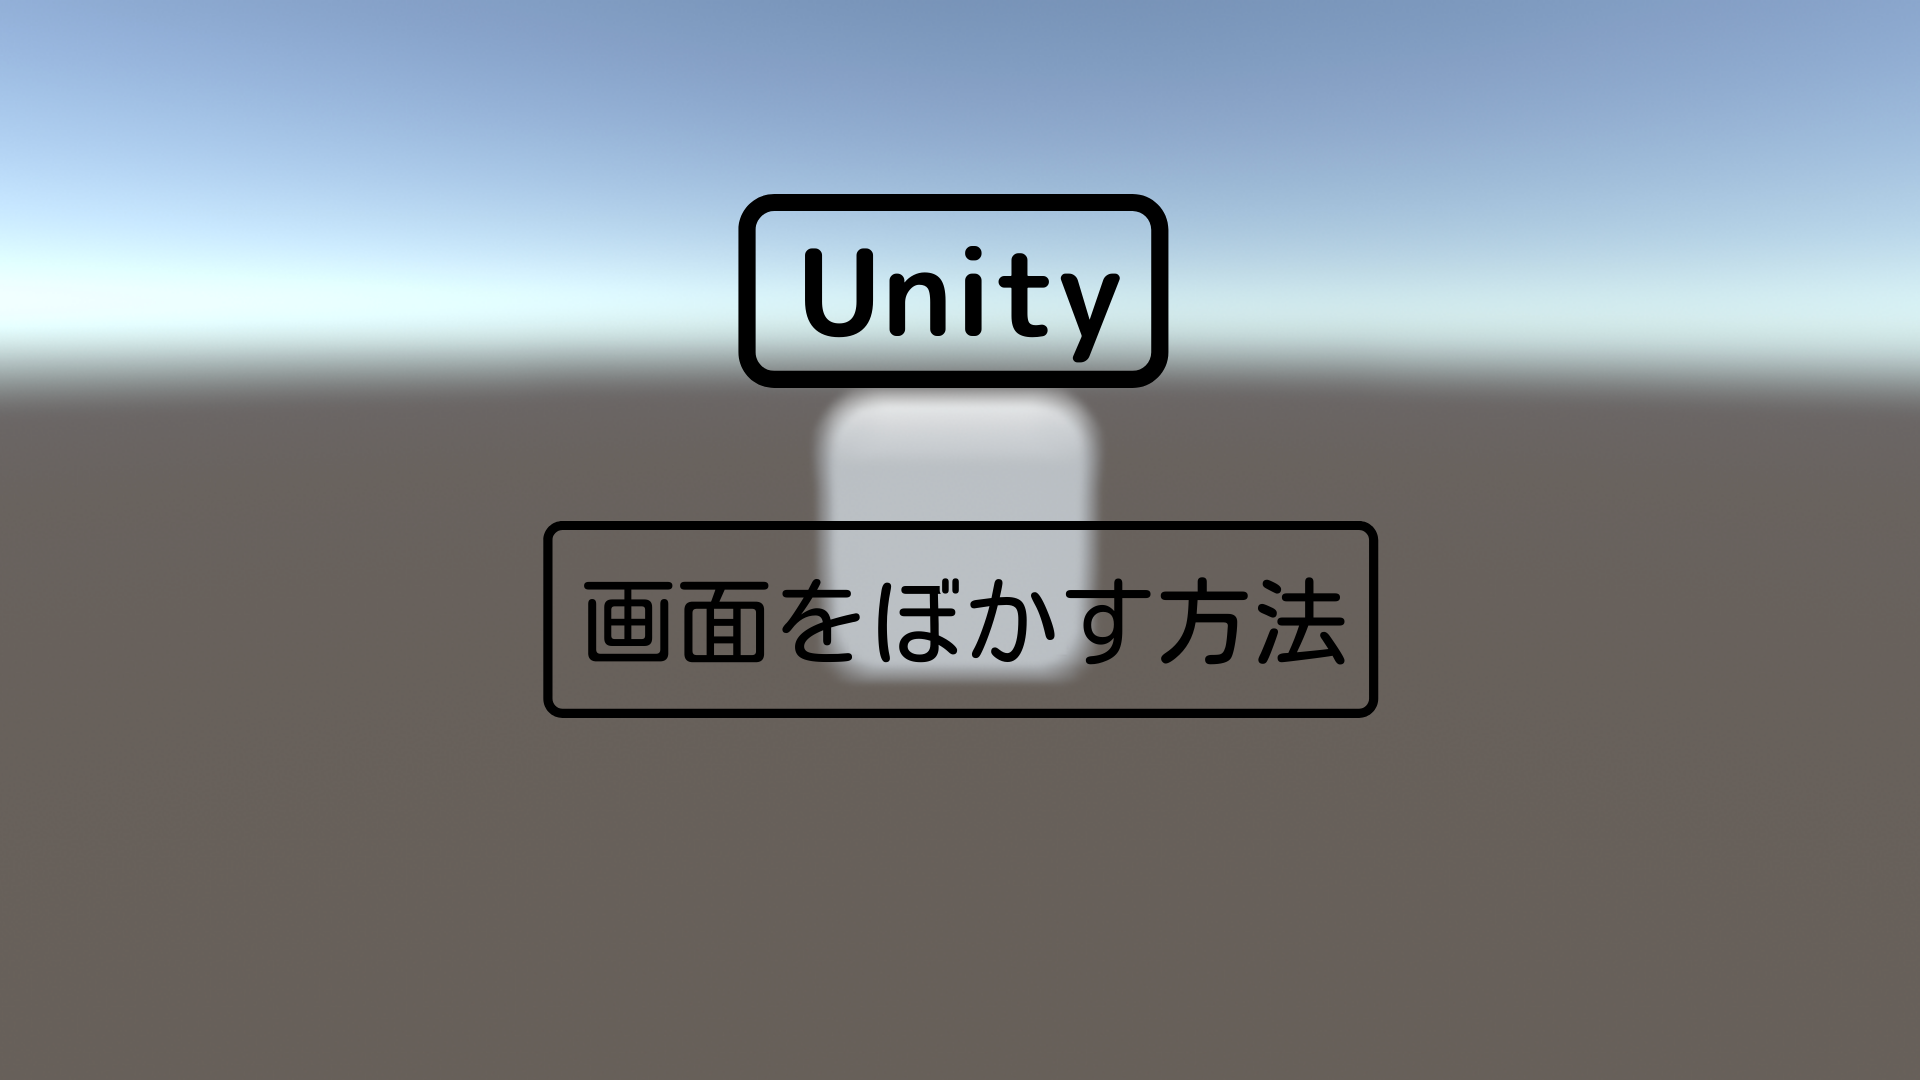 [Unity 3D] 画面をぼかす方法。